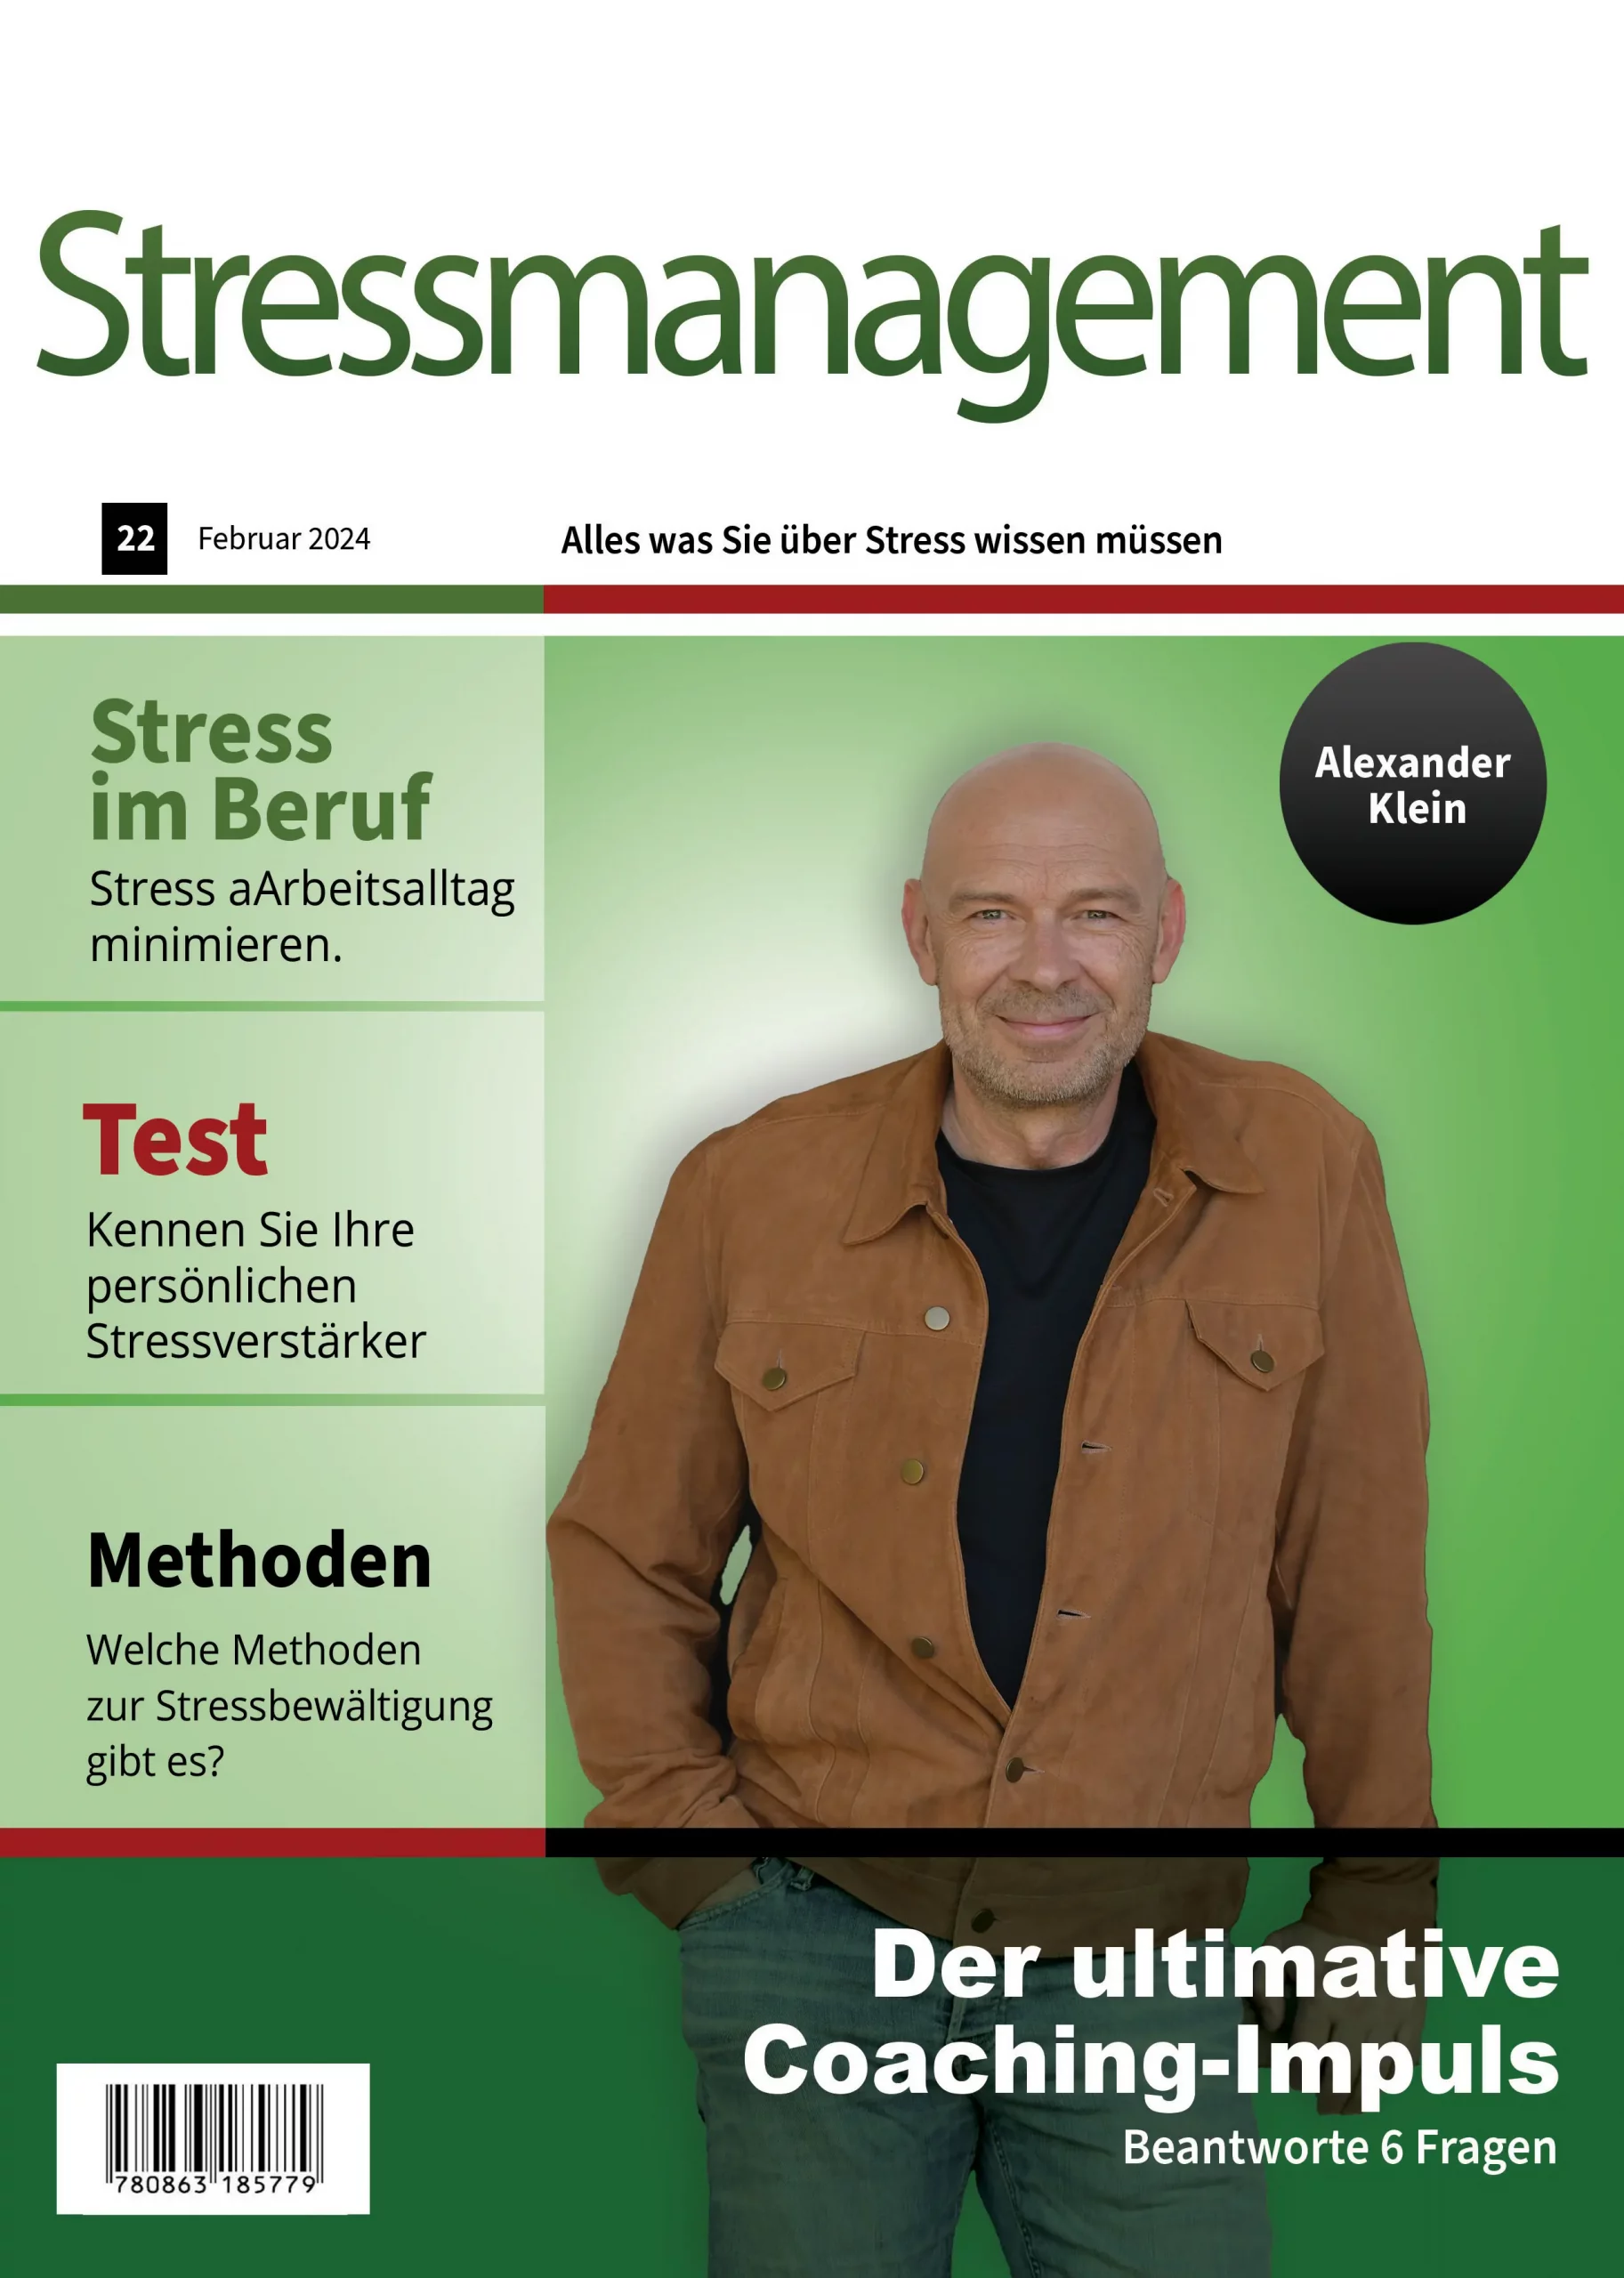 Stressmanagement - Business Coaching Köln & Personal Coach Alexander Klein